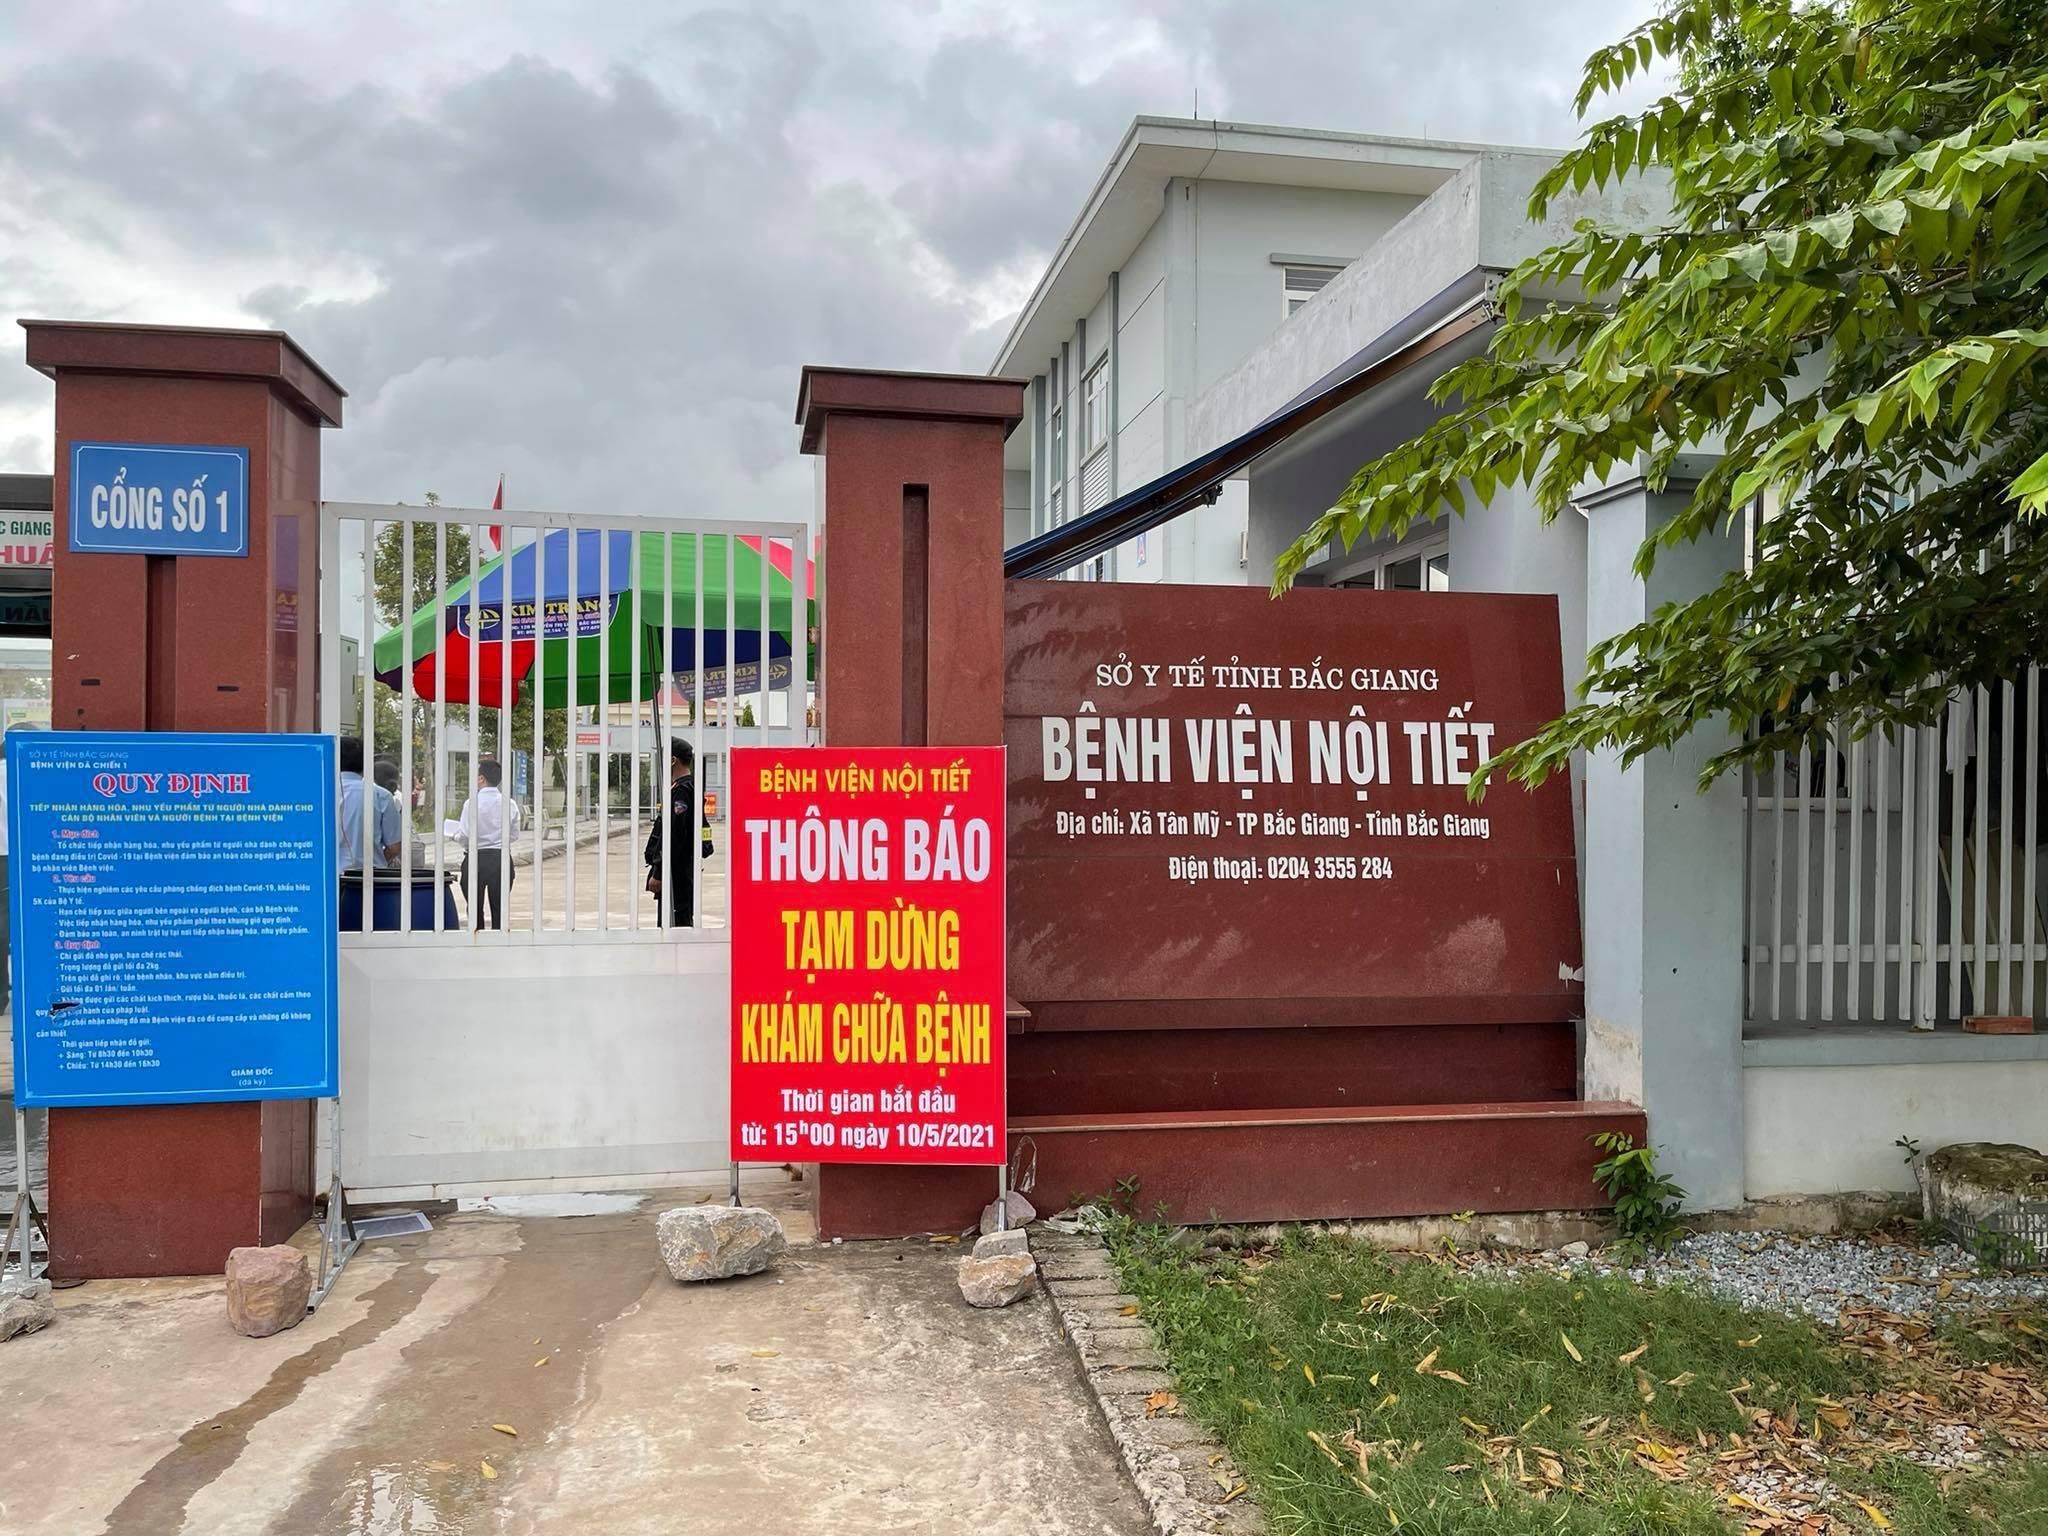 Dịch tại Bắc Giang ‘rất nóng’, Bộ trưởng Y tế đề nghị nâng mức phong tỏa - Ảnh 1.